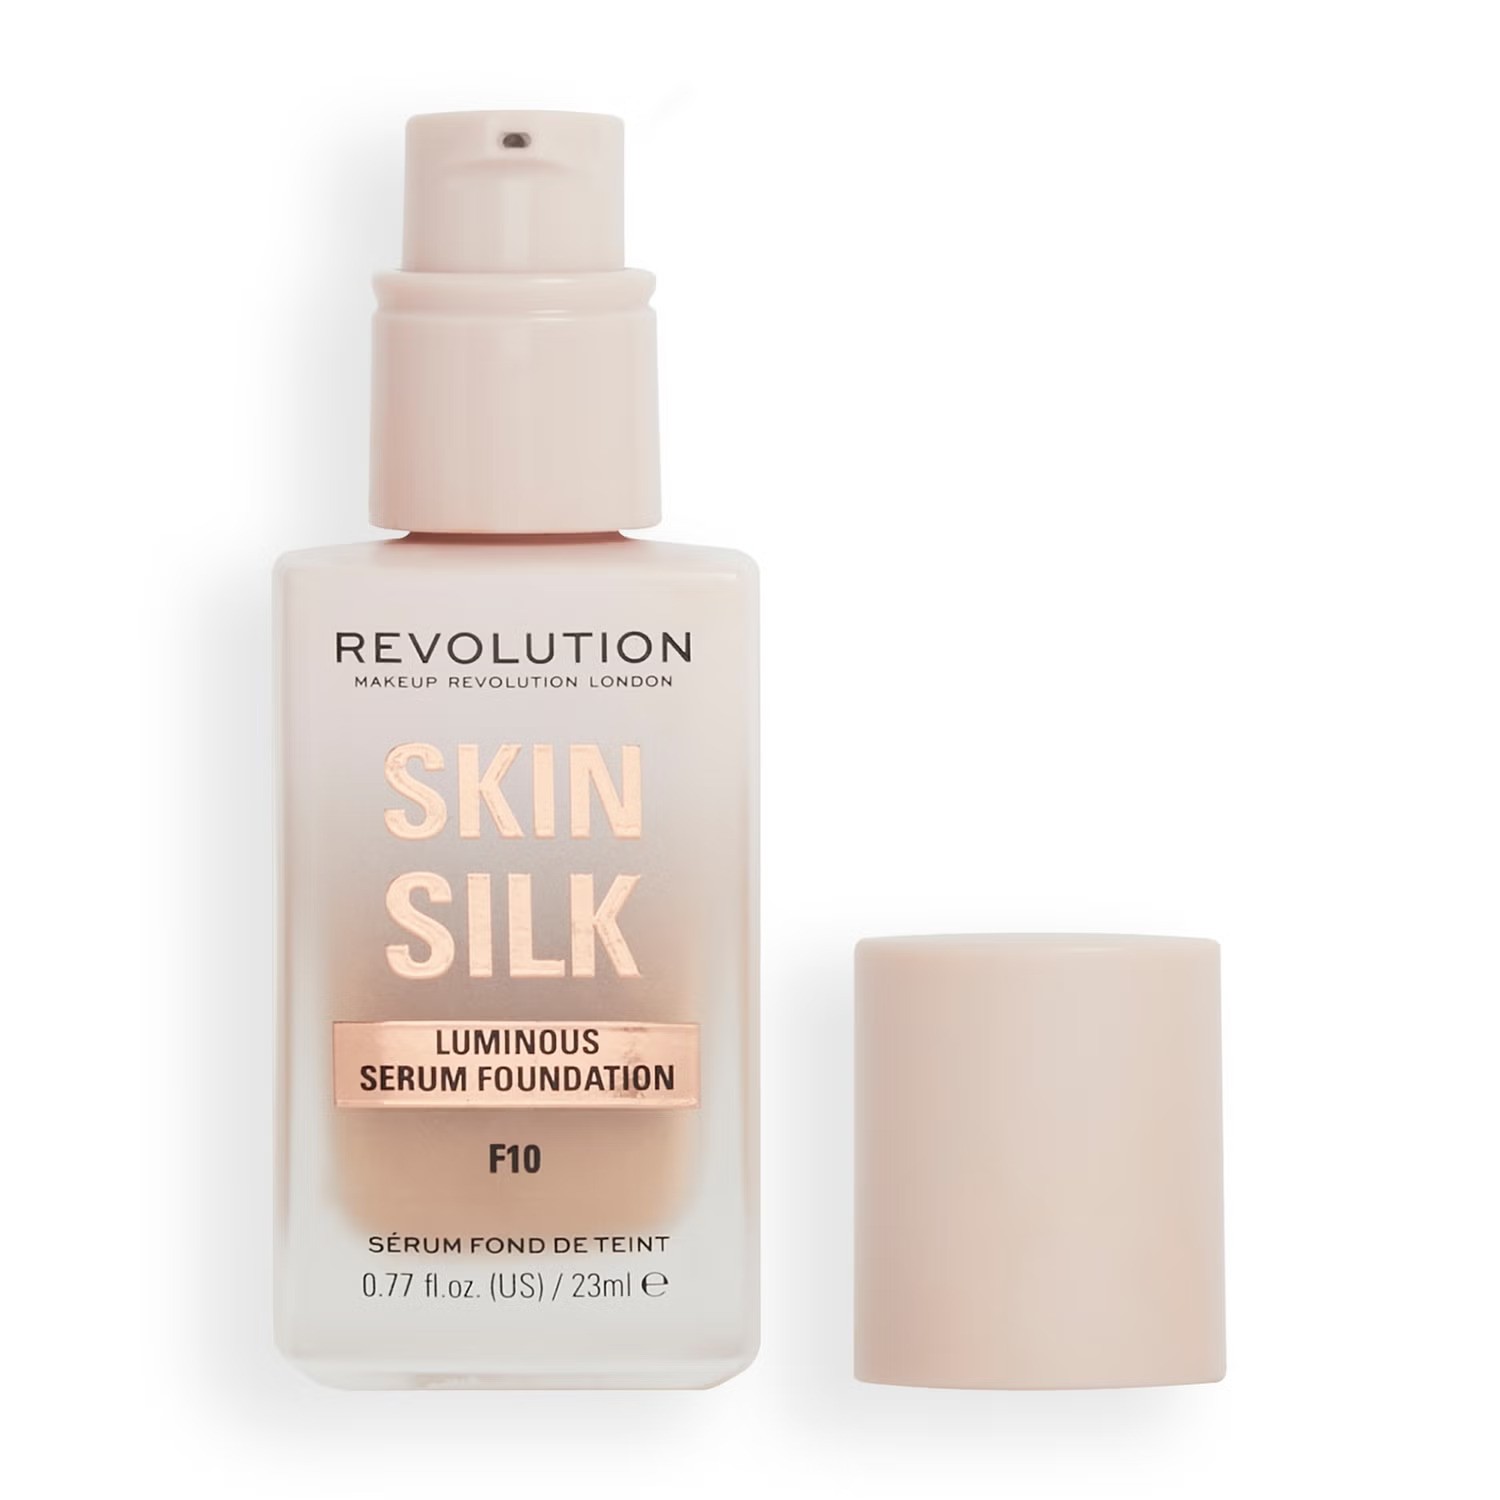 revolution skin silk puder